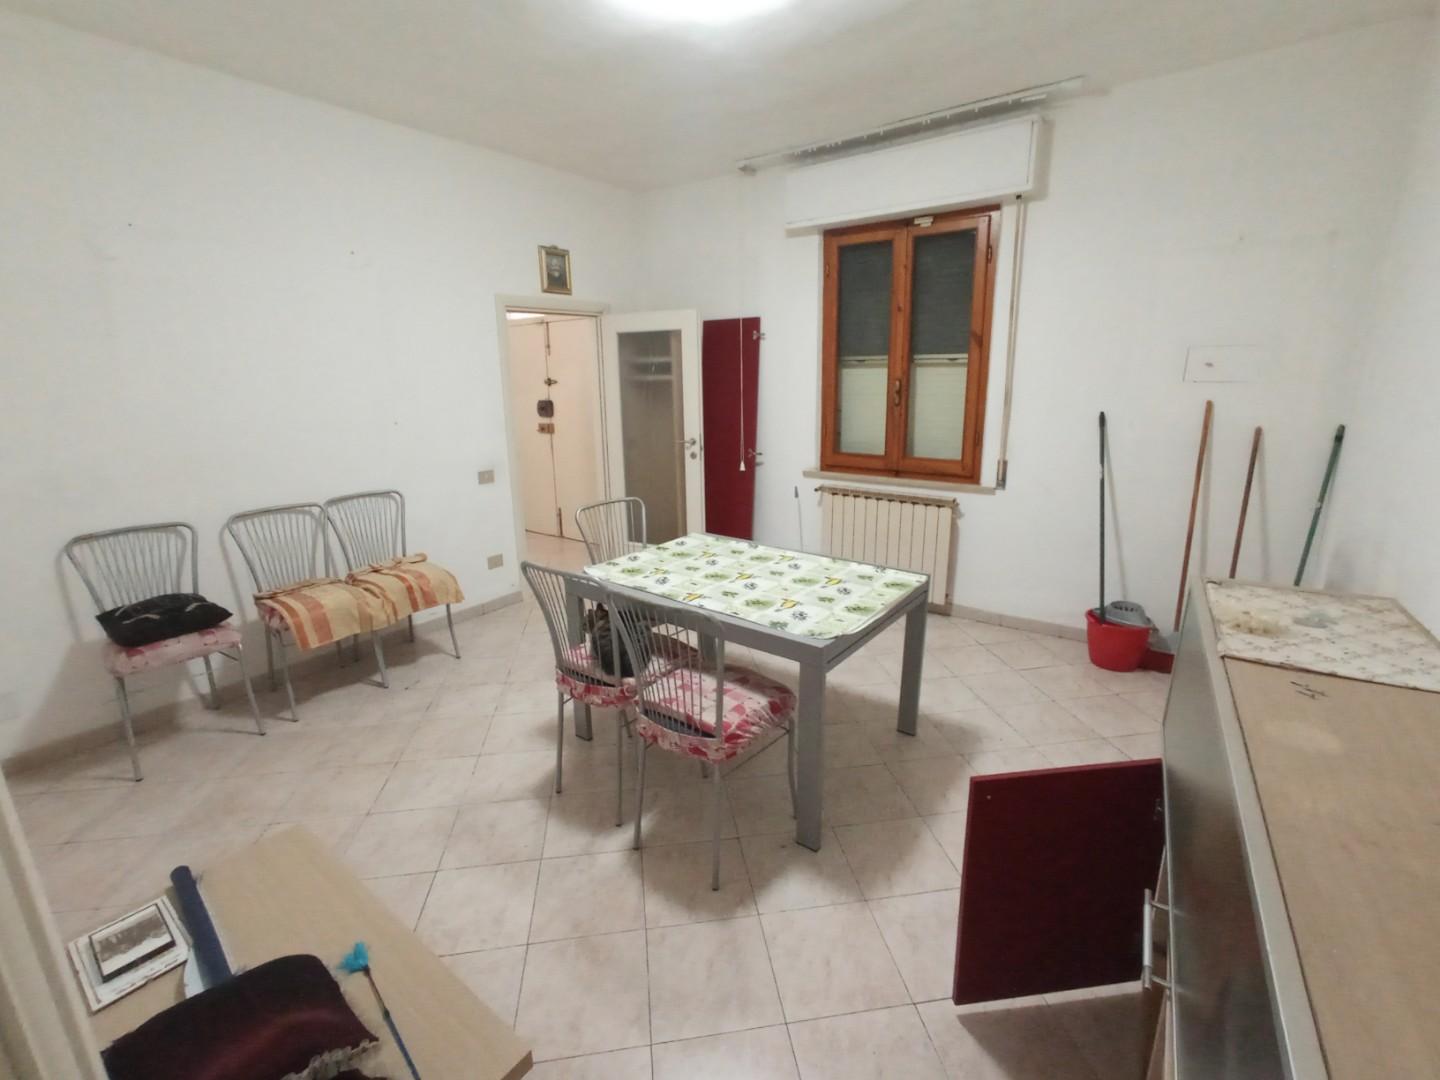 Appartamento in vendita a Montopoli in Val d'Arno, 4 locali, prezzo € 135.000 | PortaleAgenzieImmobiliari.it